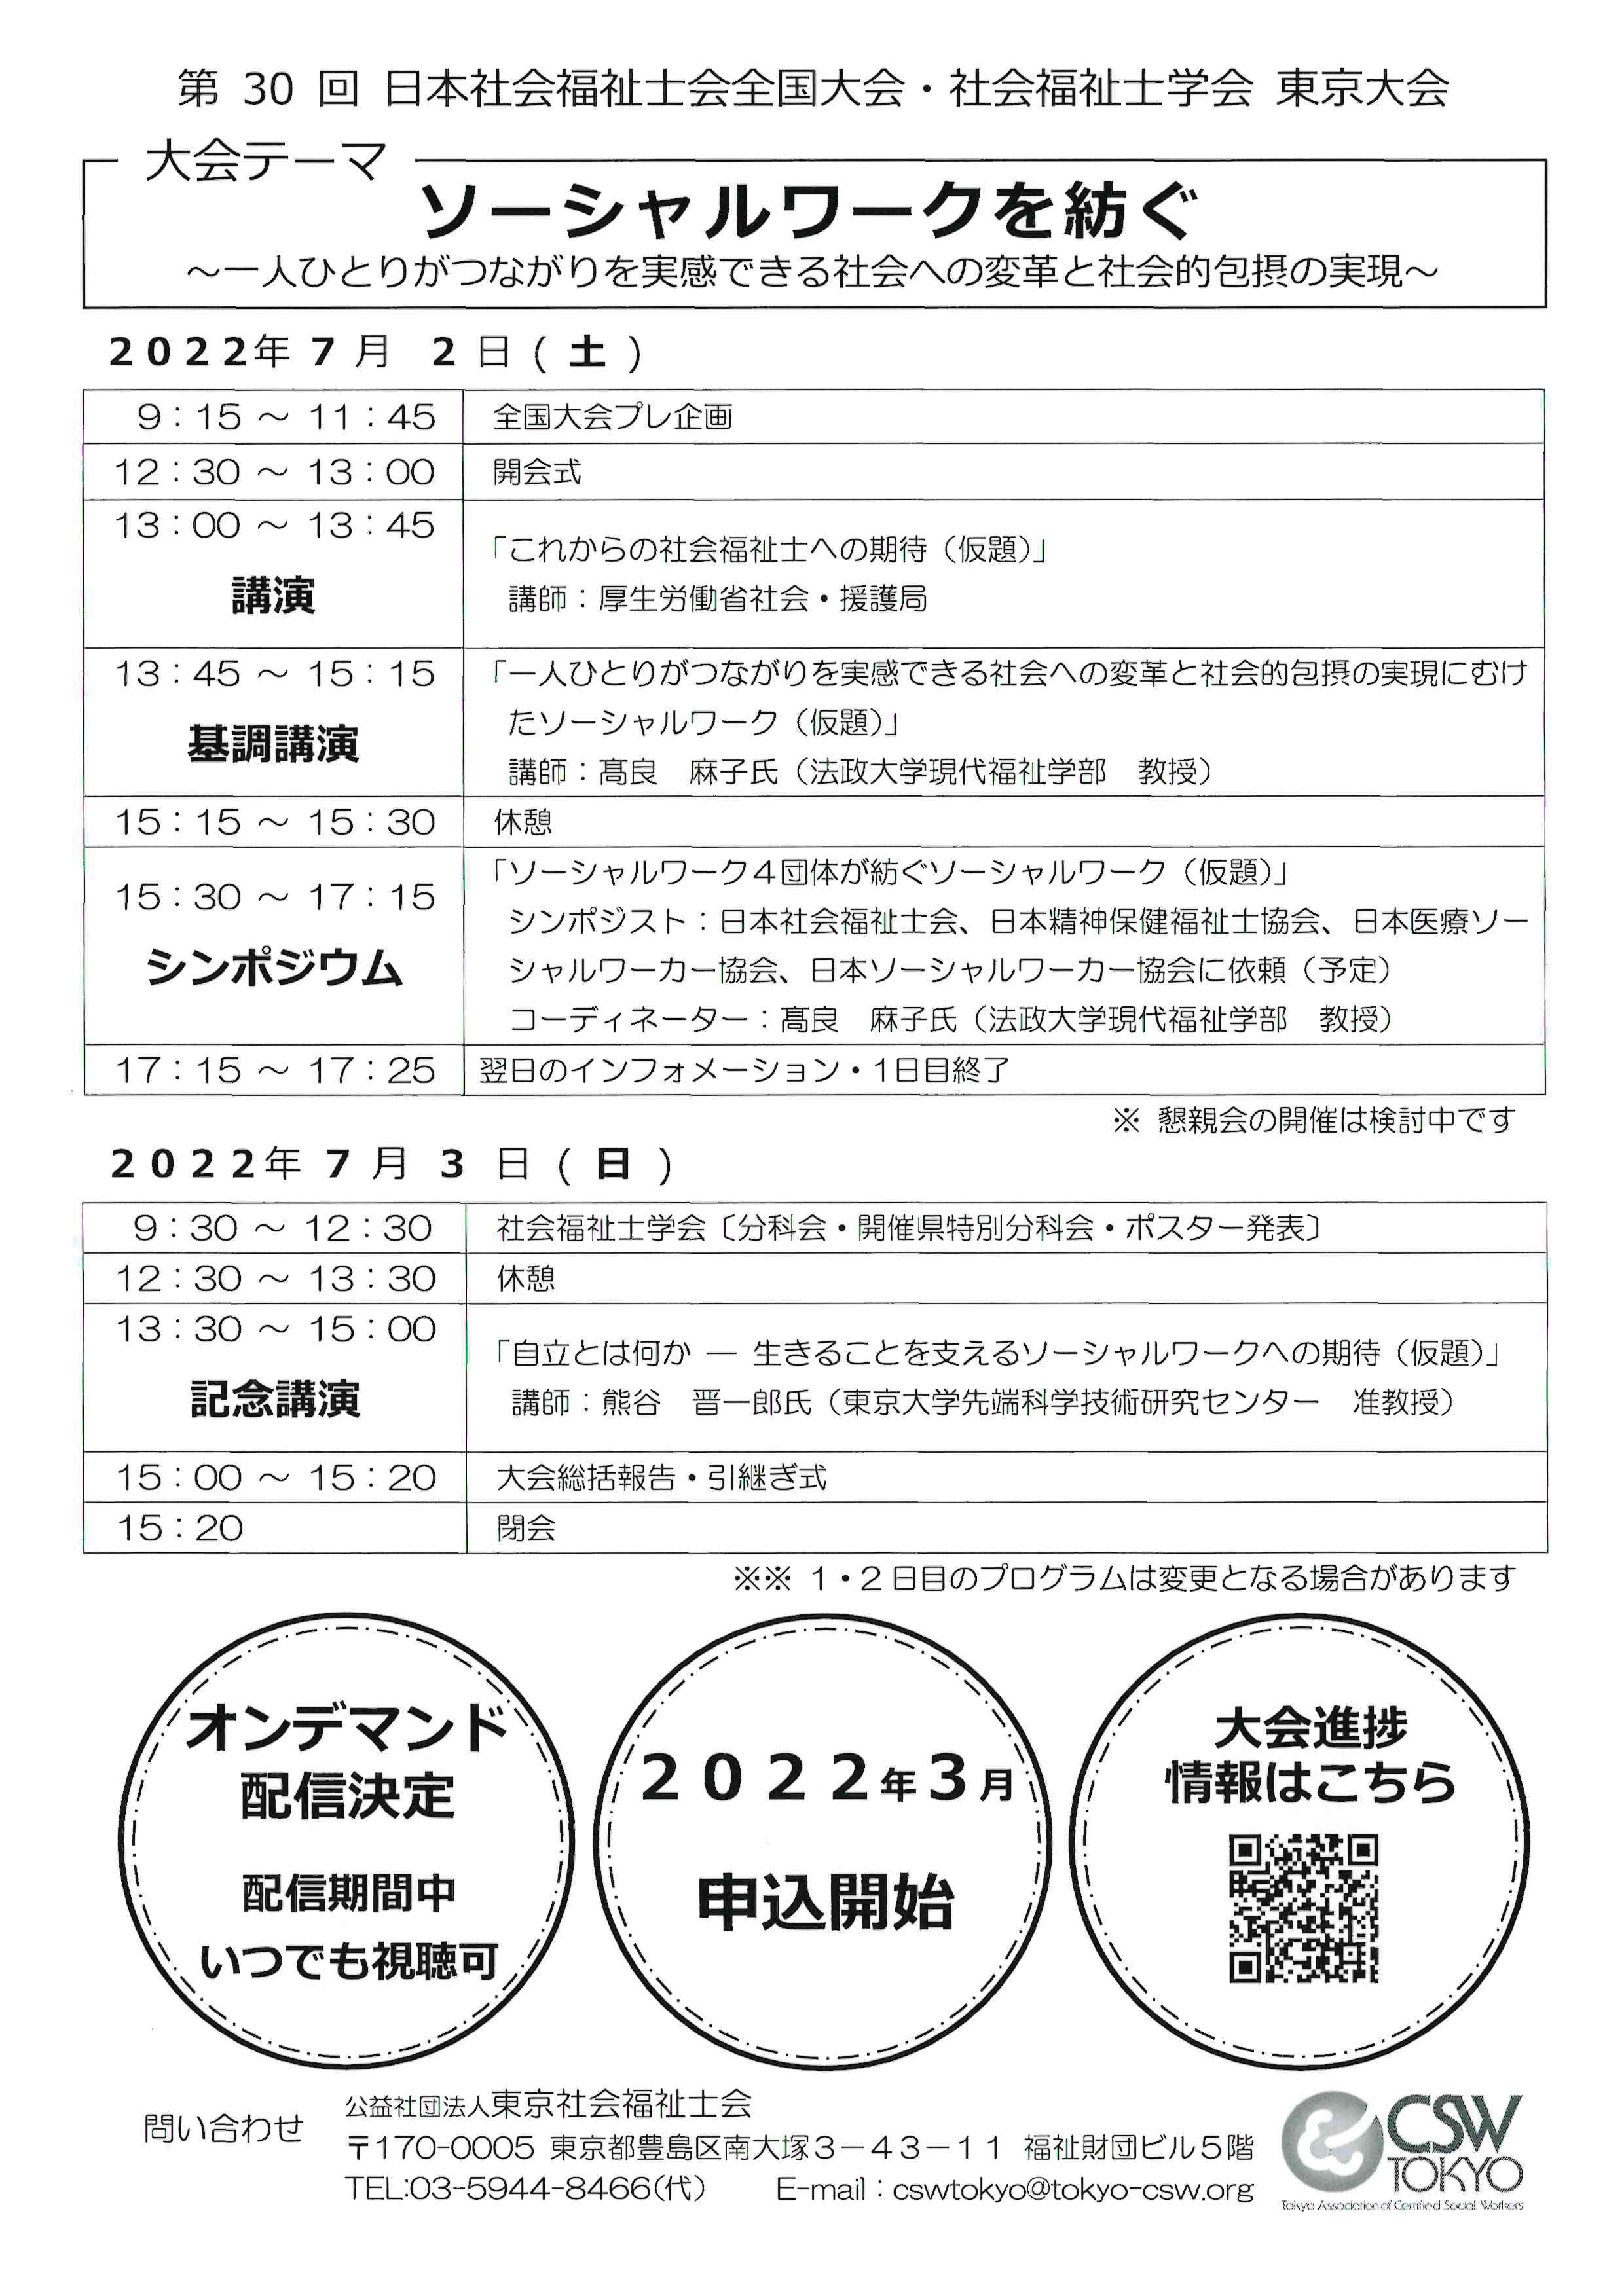 ！！第30回日本社会福祉士会全国大会・社会福祉士学会(東京大会)が開催されます！！